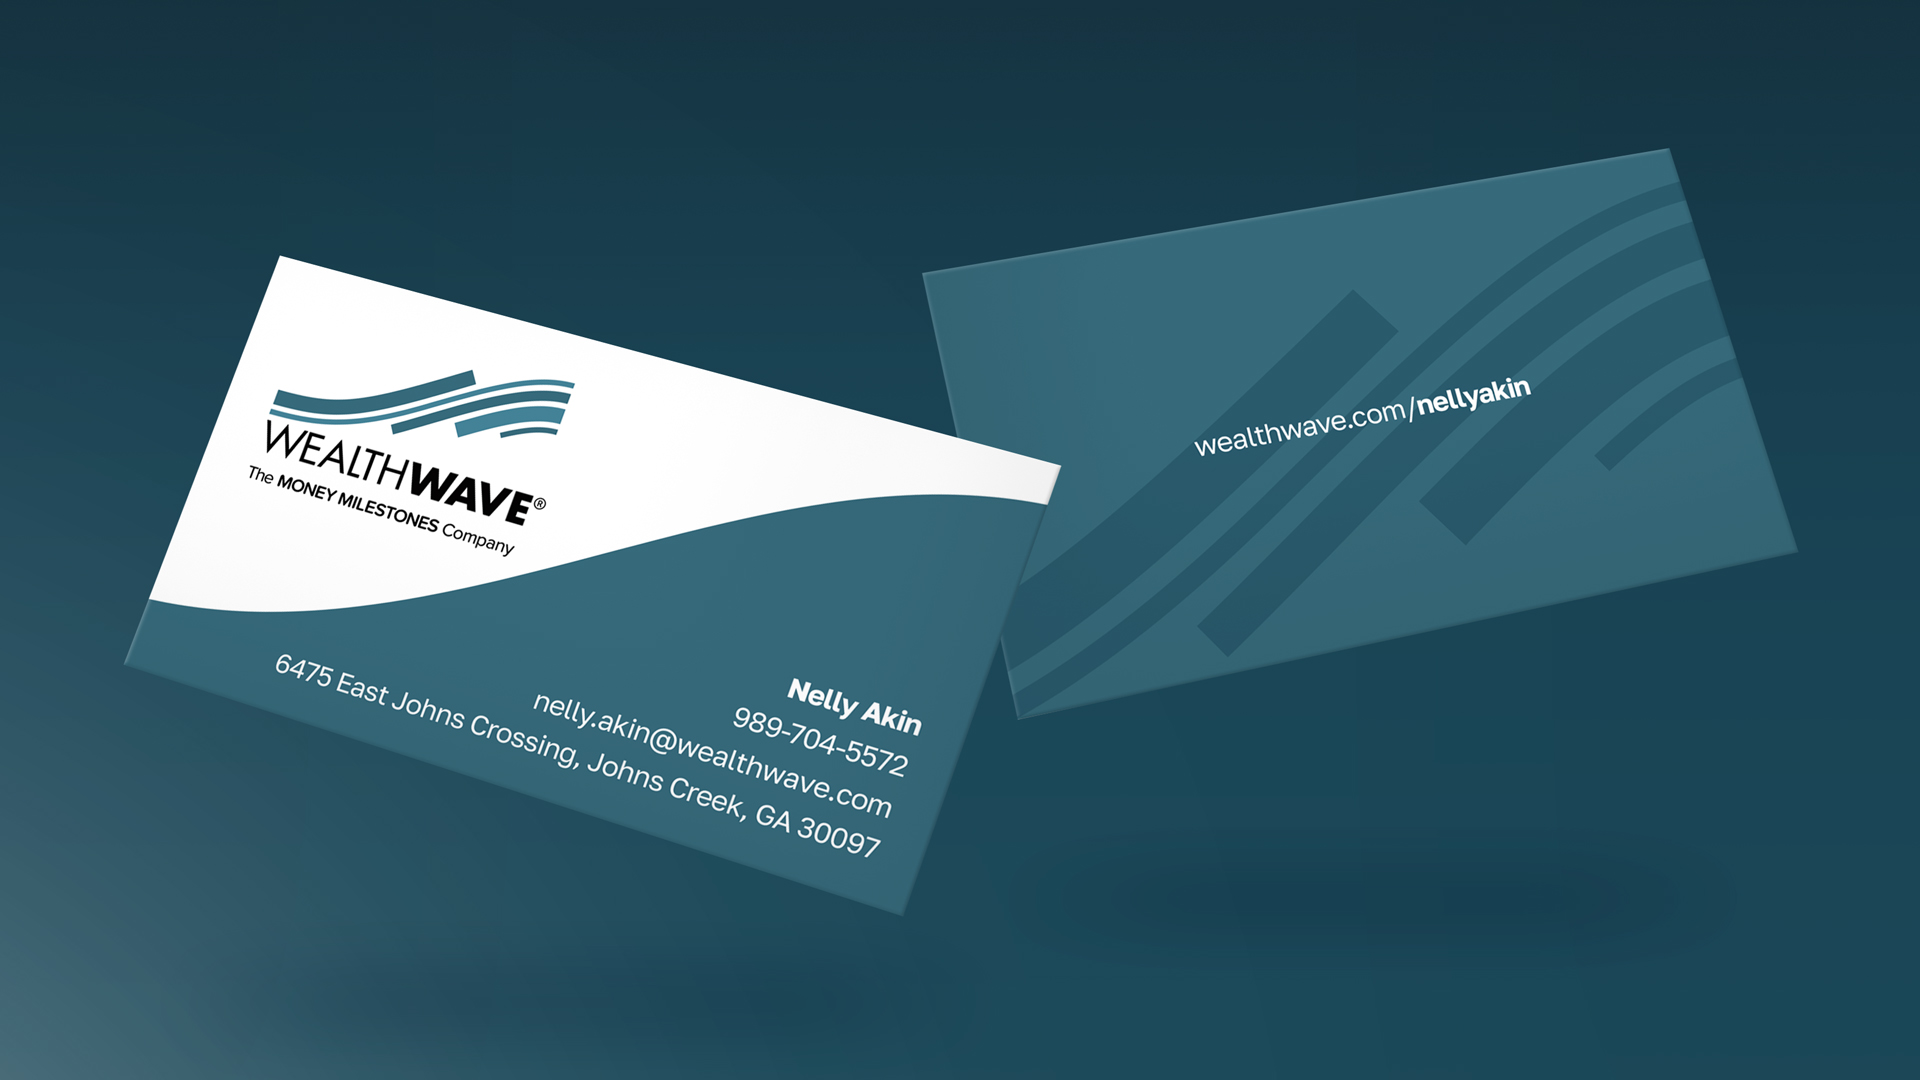 بطاقات الأعمال الزرقاء WealthWave الجديدة متوفرة بالتصميم الكلاسيكي